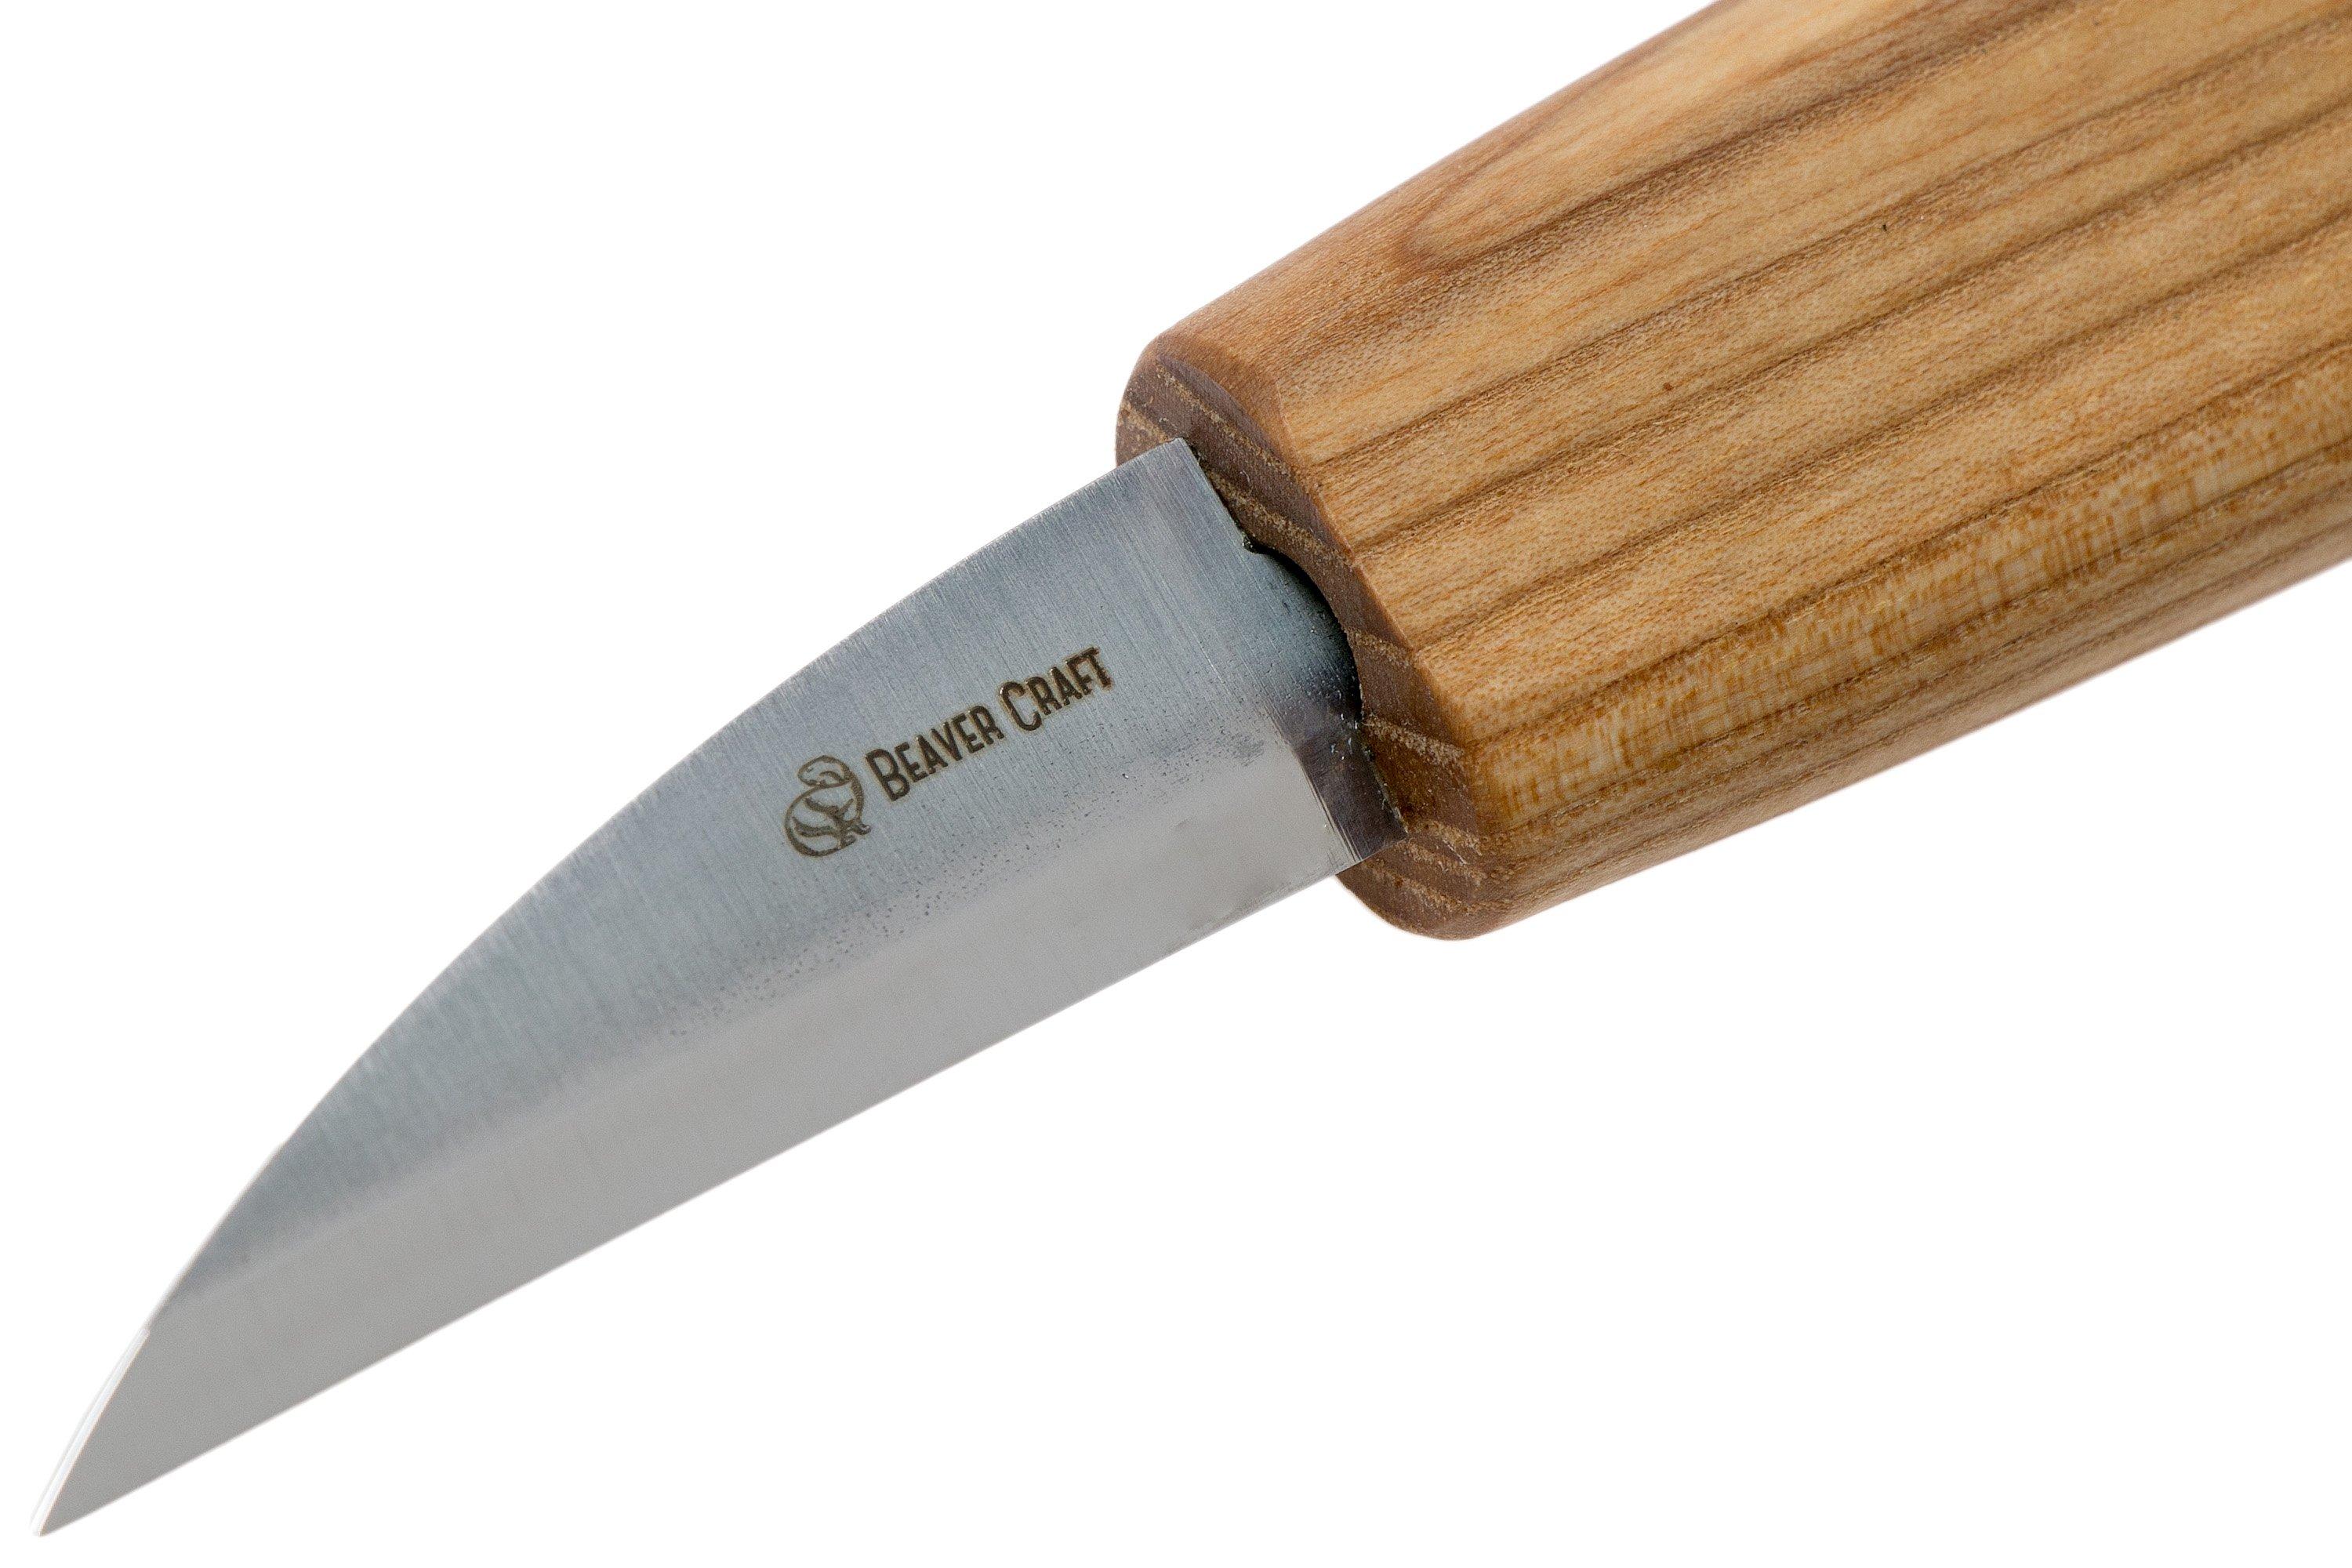 BeaverCraft Whittling Knife C14, wood carving knife | Advantageously ...